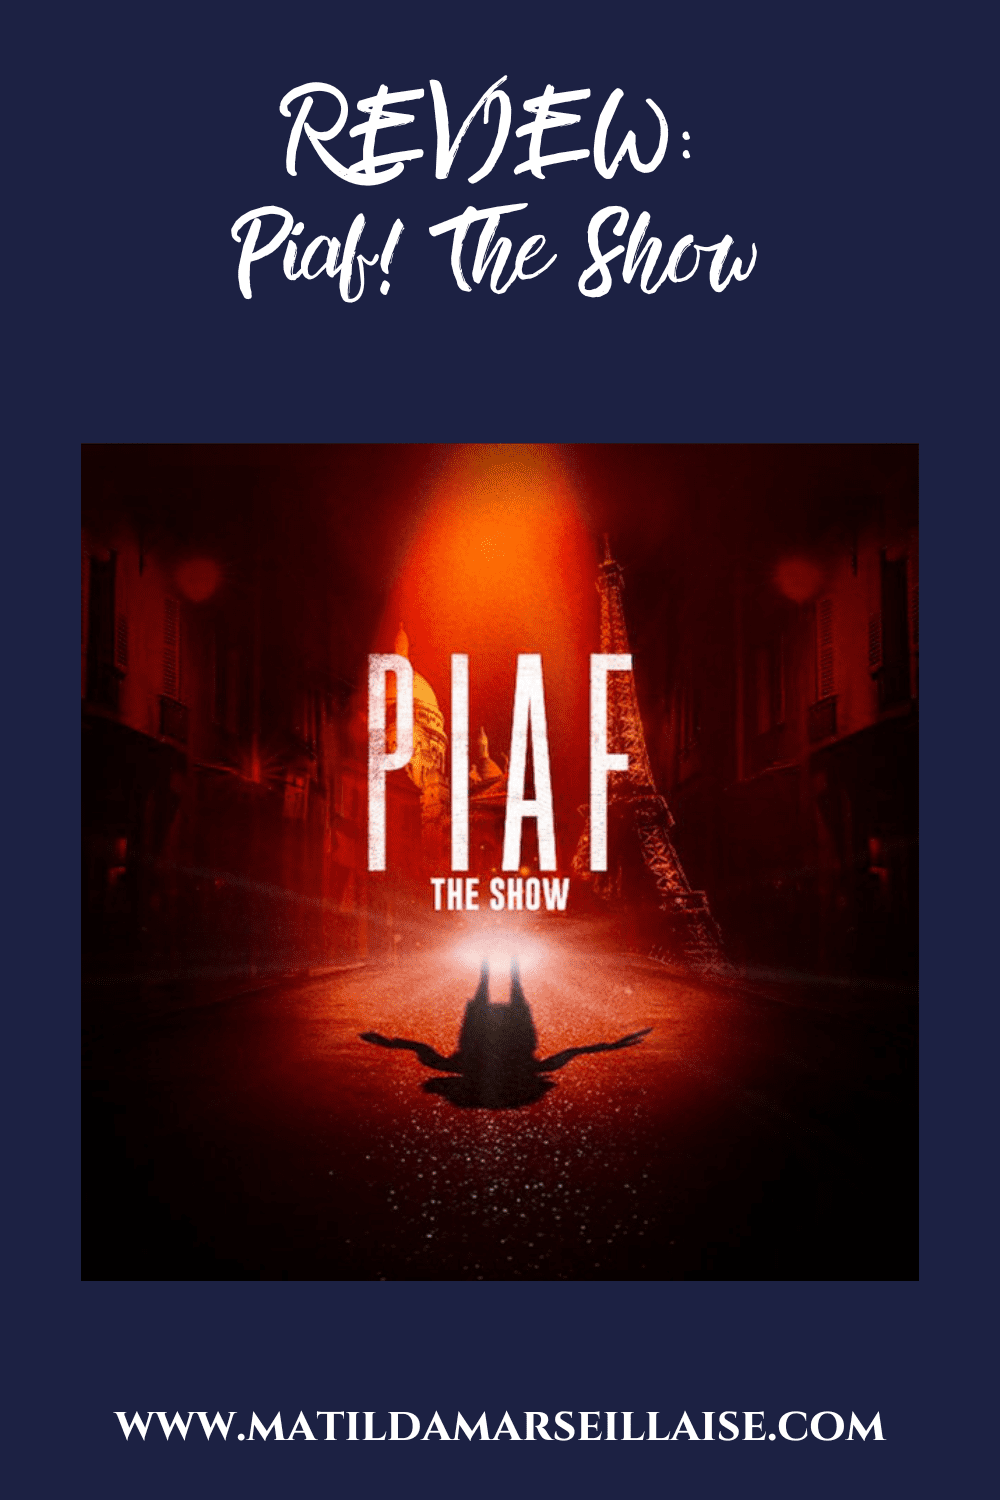 Piaf! The Show REVIEW